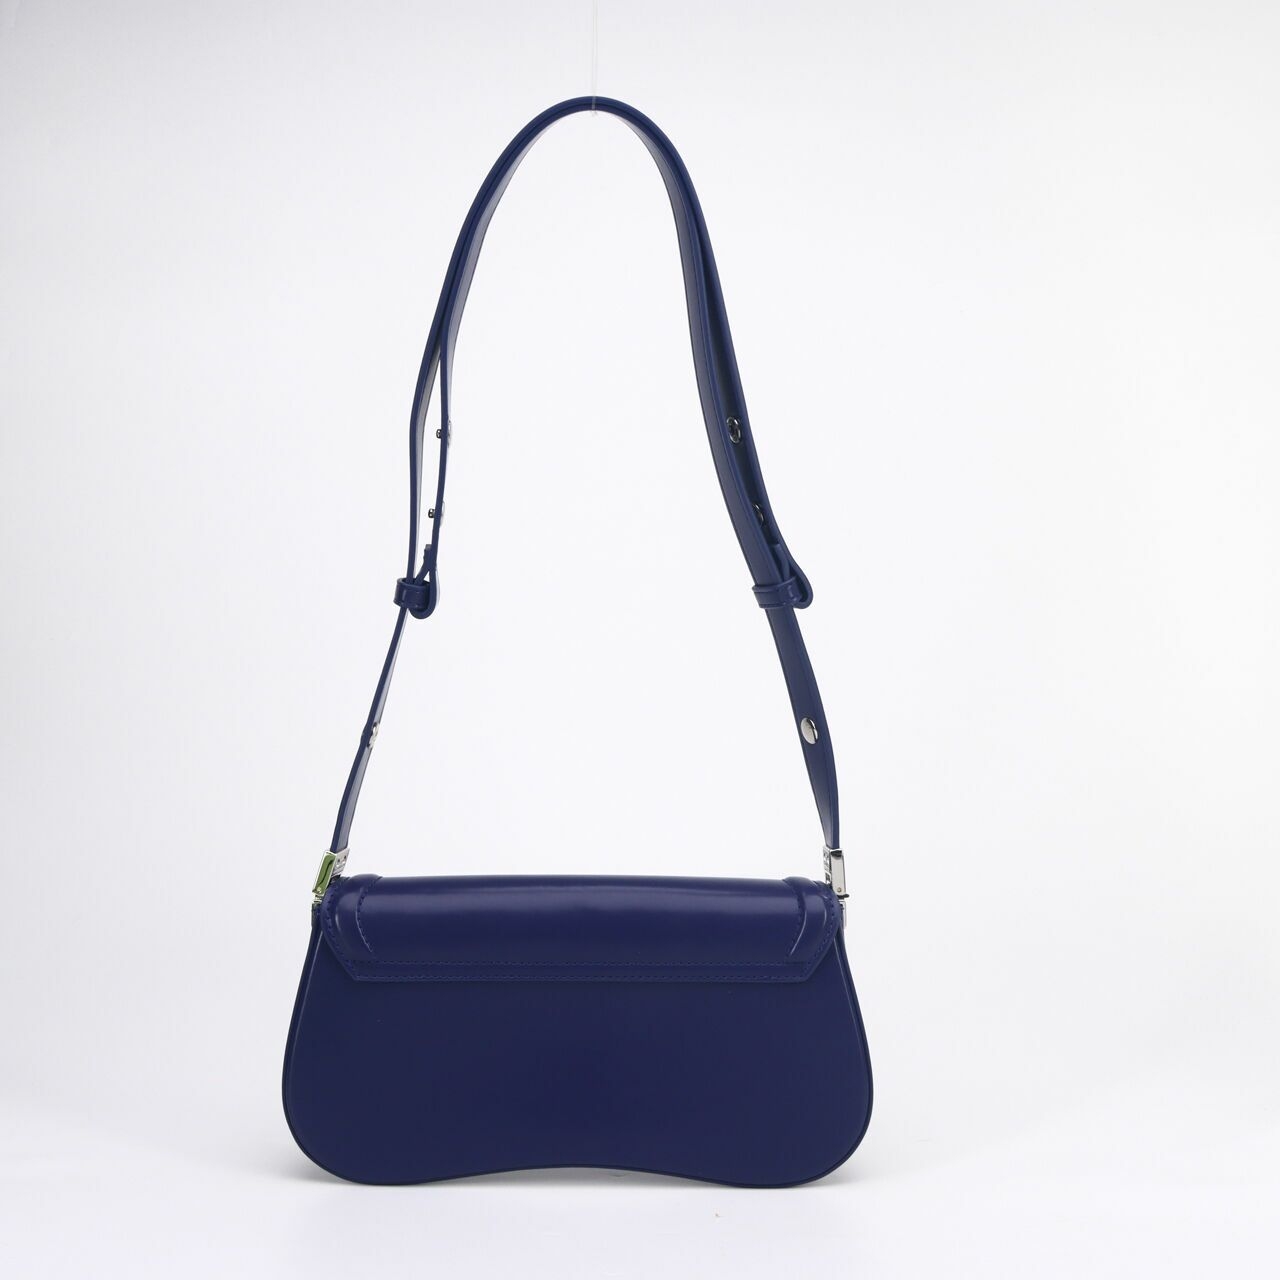  JW PEI Women's FEI Joy Shoulder Bag Blue